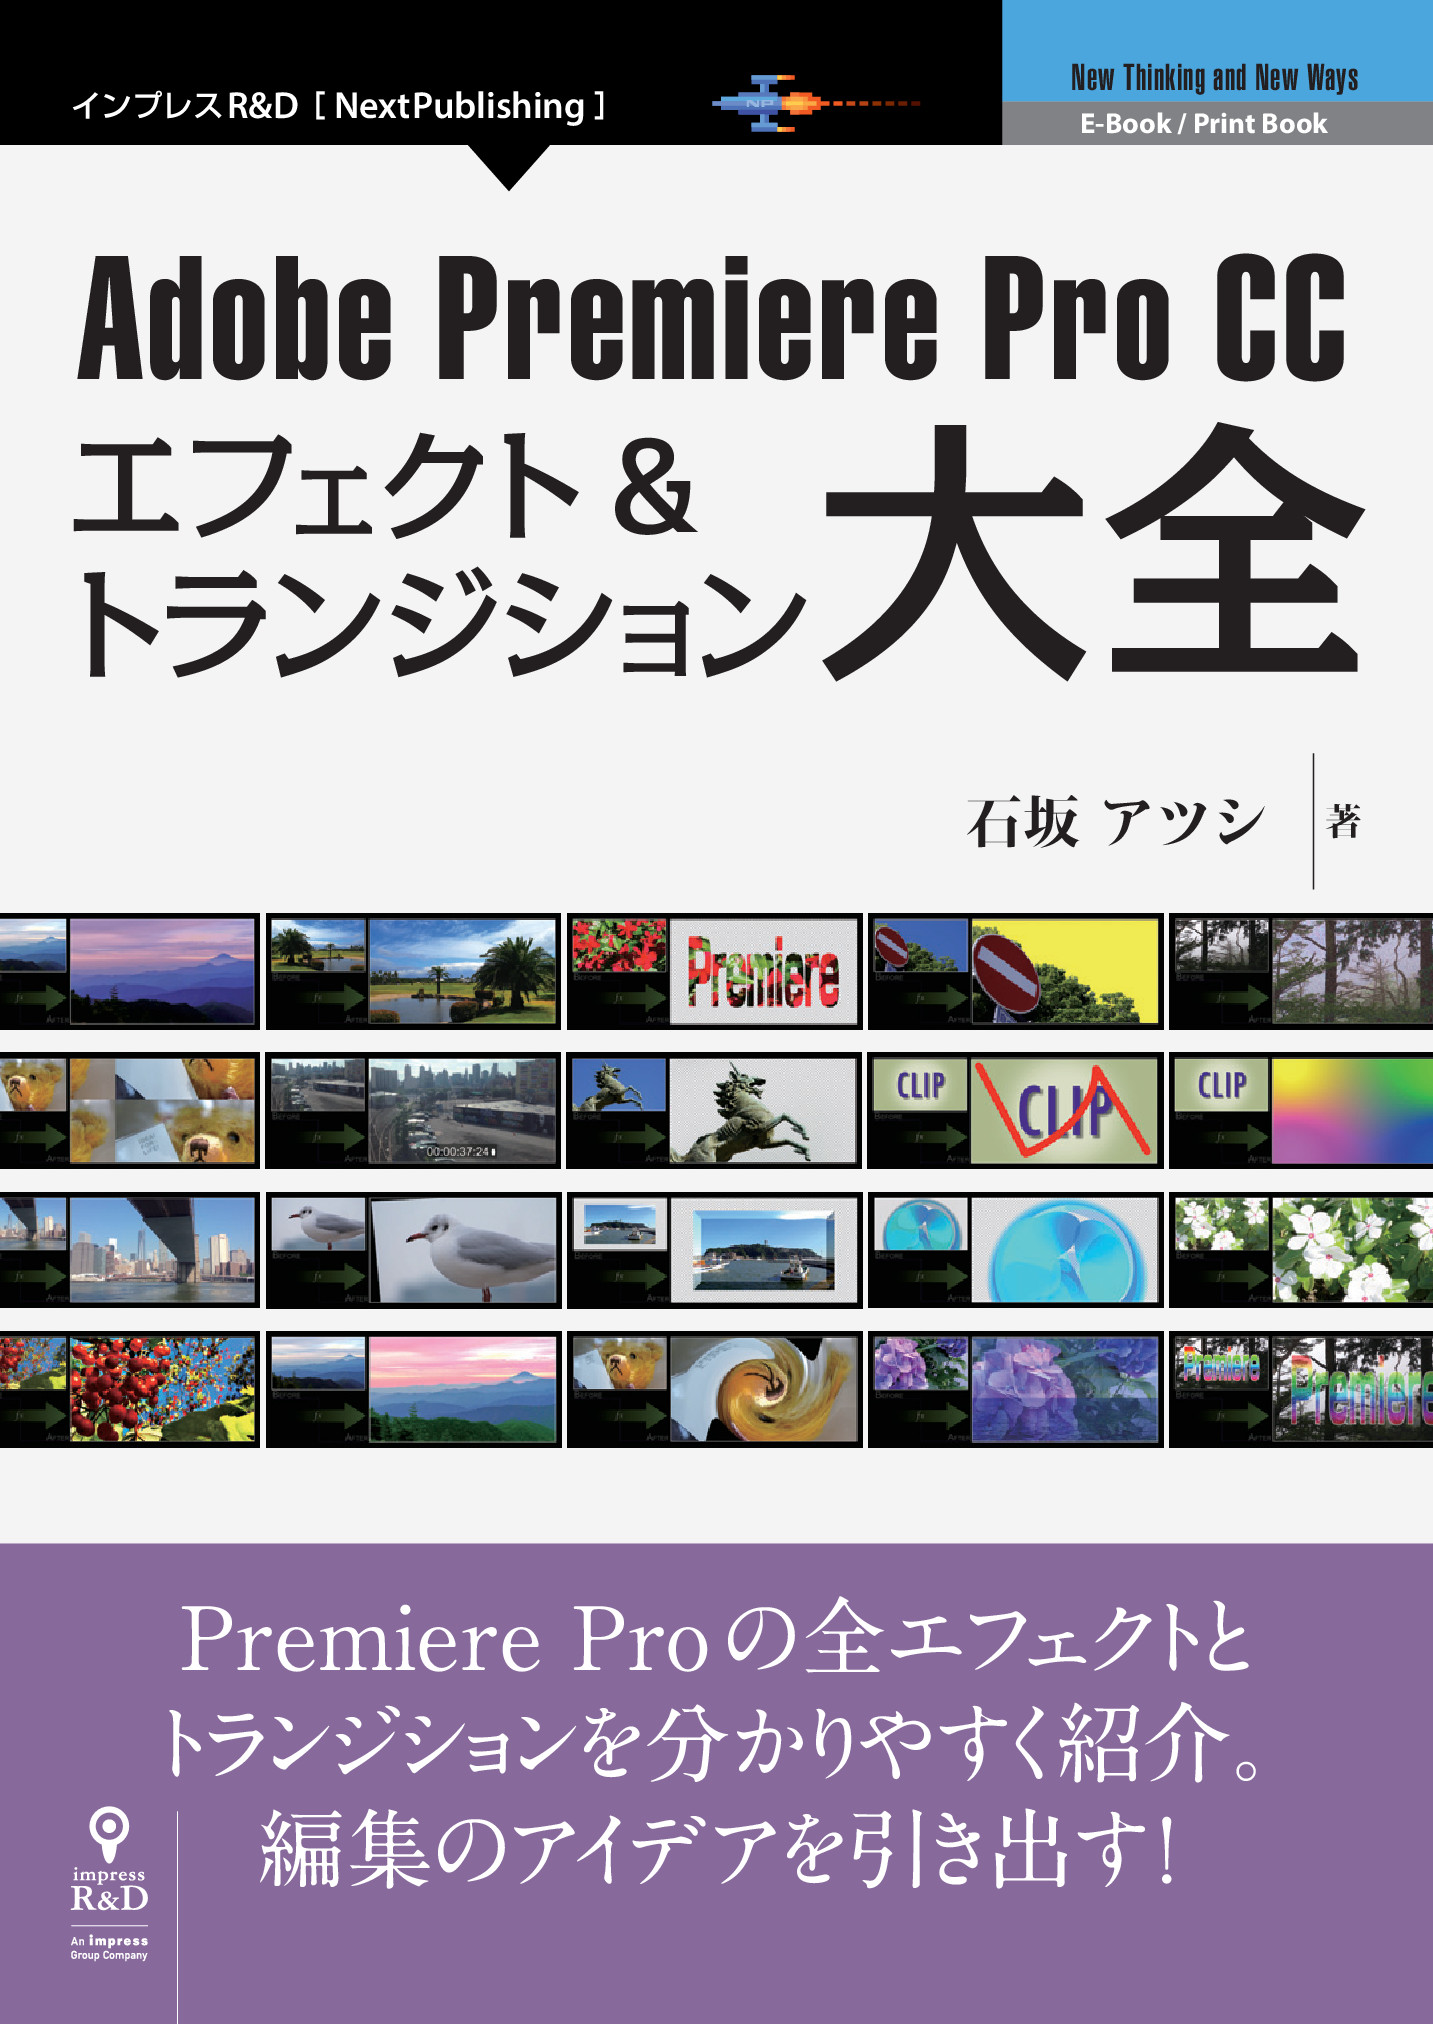 Adobe Premiere Pro Cc エフェクト トランジション大全 委託 達人出版会